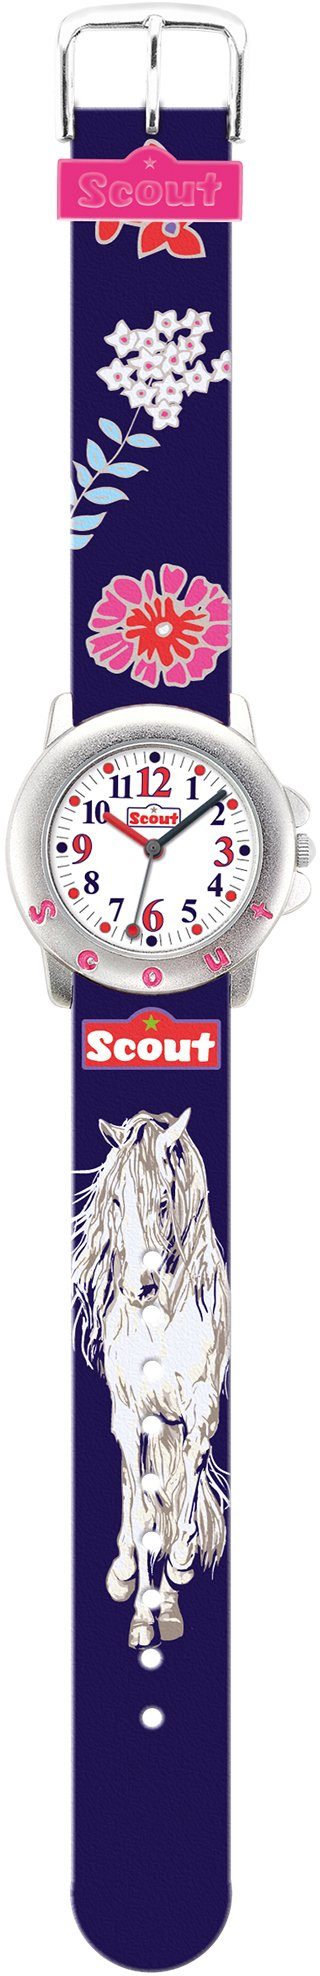 Scout Quarzuhr Star Kids, auch 280393006, mit Geschenk Pferdeuhr, Pferdemotiv, als ideal